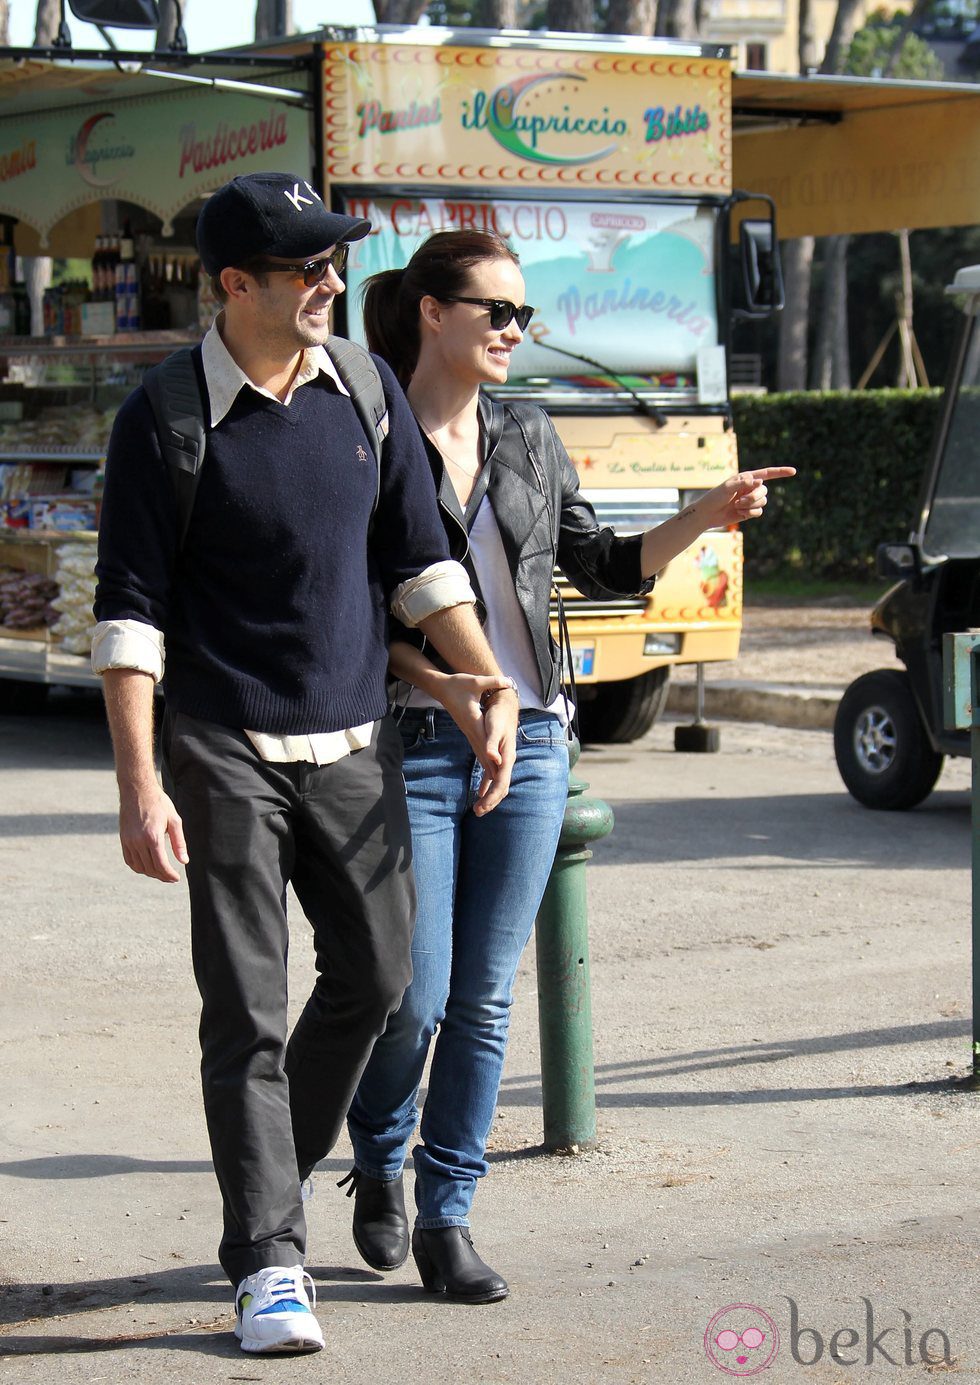 Olivia Wilde y Jason Sudeikis charlan animadamente durante su paseo por Roma